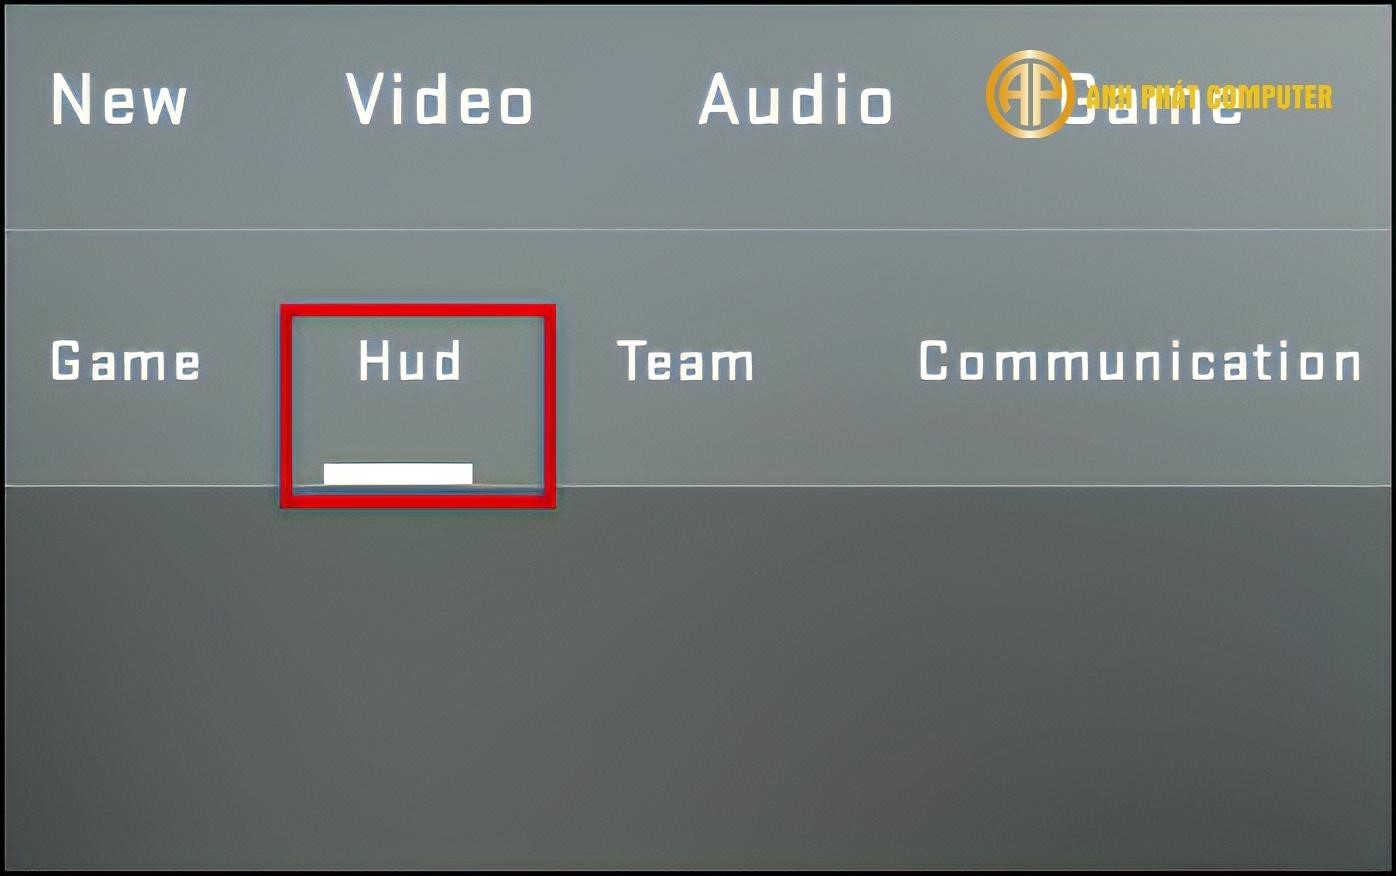 Lệnh HUD trong game CS GO là một tính năng hiển thị thông tin trên màn hình, cho phép người chơi theo dõi các chỉ số quan trọng như máu, giáp, vũ khí và các thông báo quan trọng khác trong quá trình chơi game.